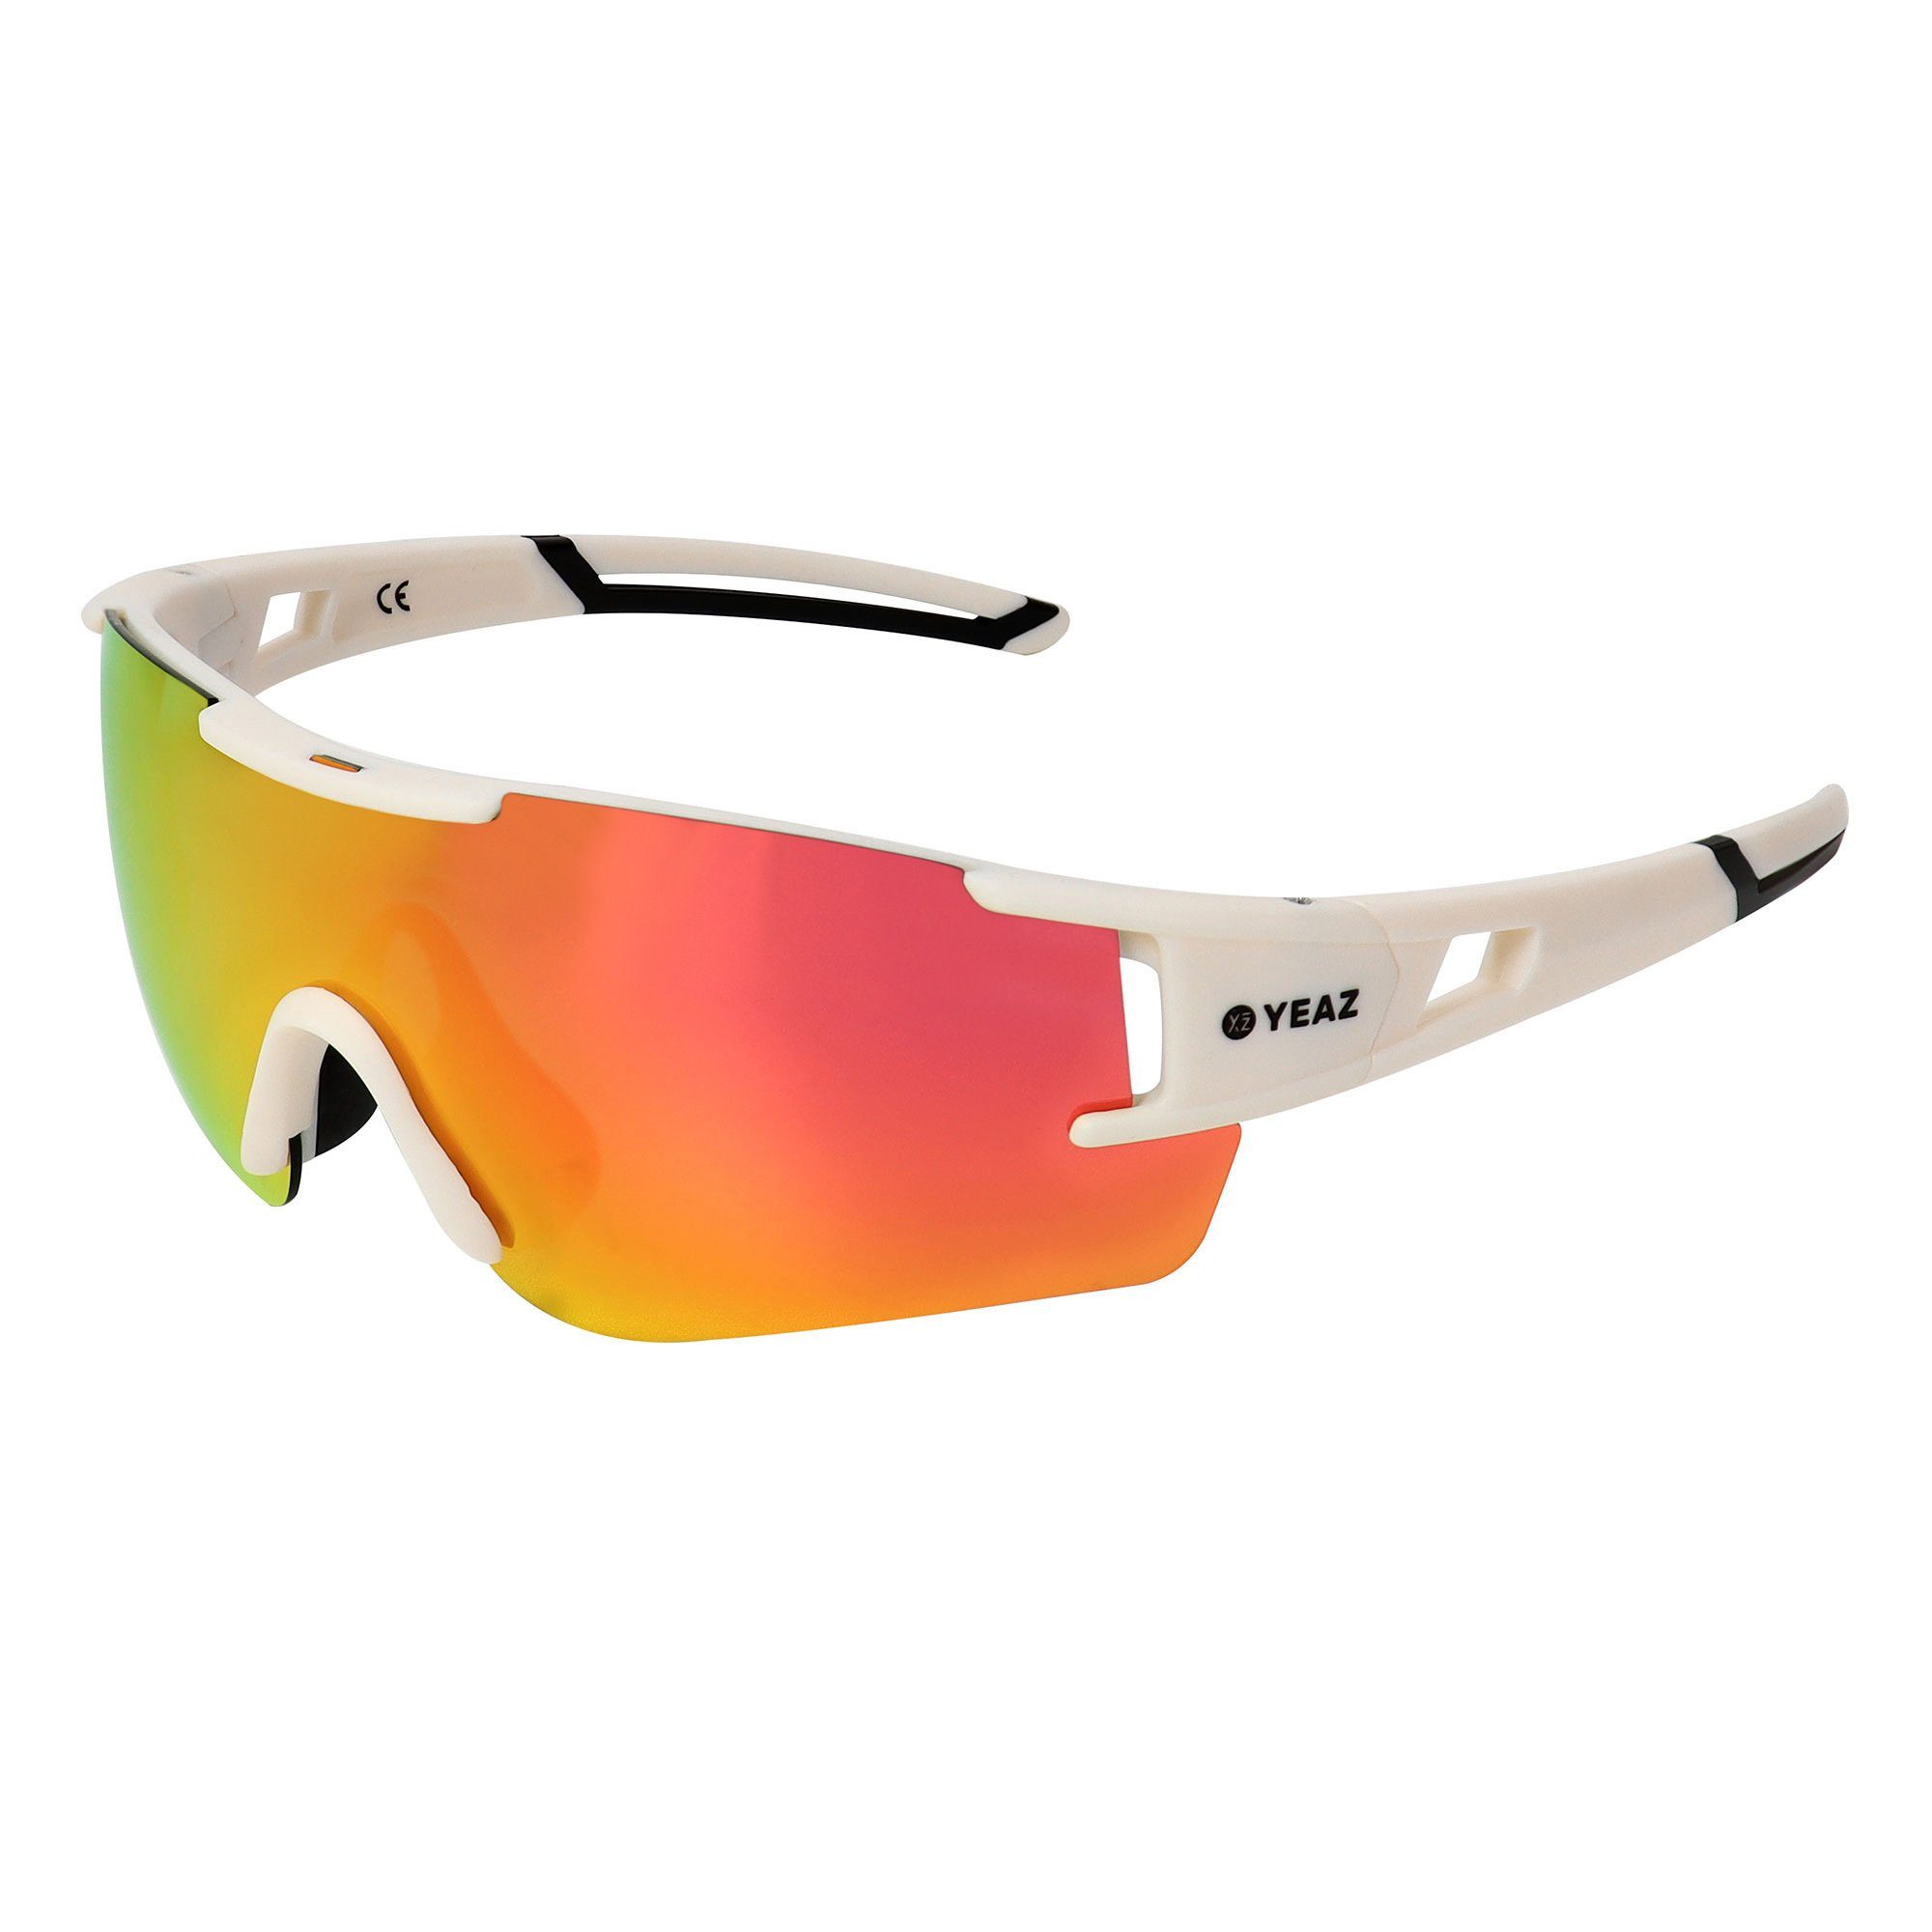 YEAZ Sportbrille SUNBLOW sport-sonnenbrille creme white/pink, Guter Schutz bei optimierter Sicht